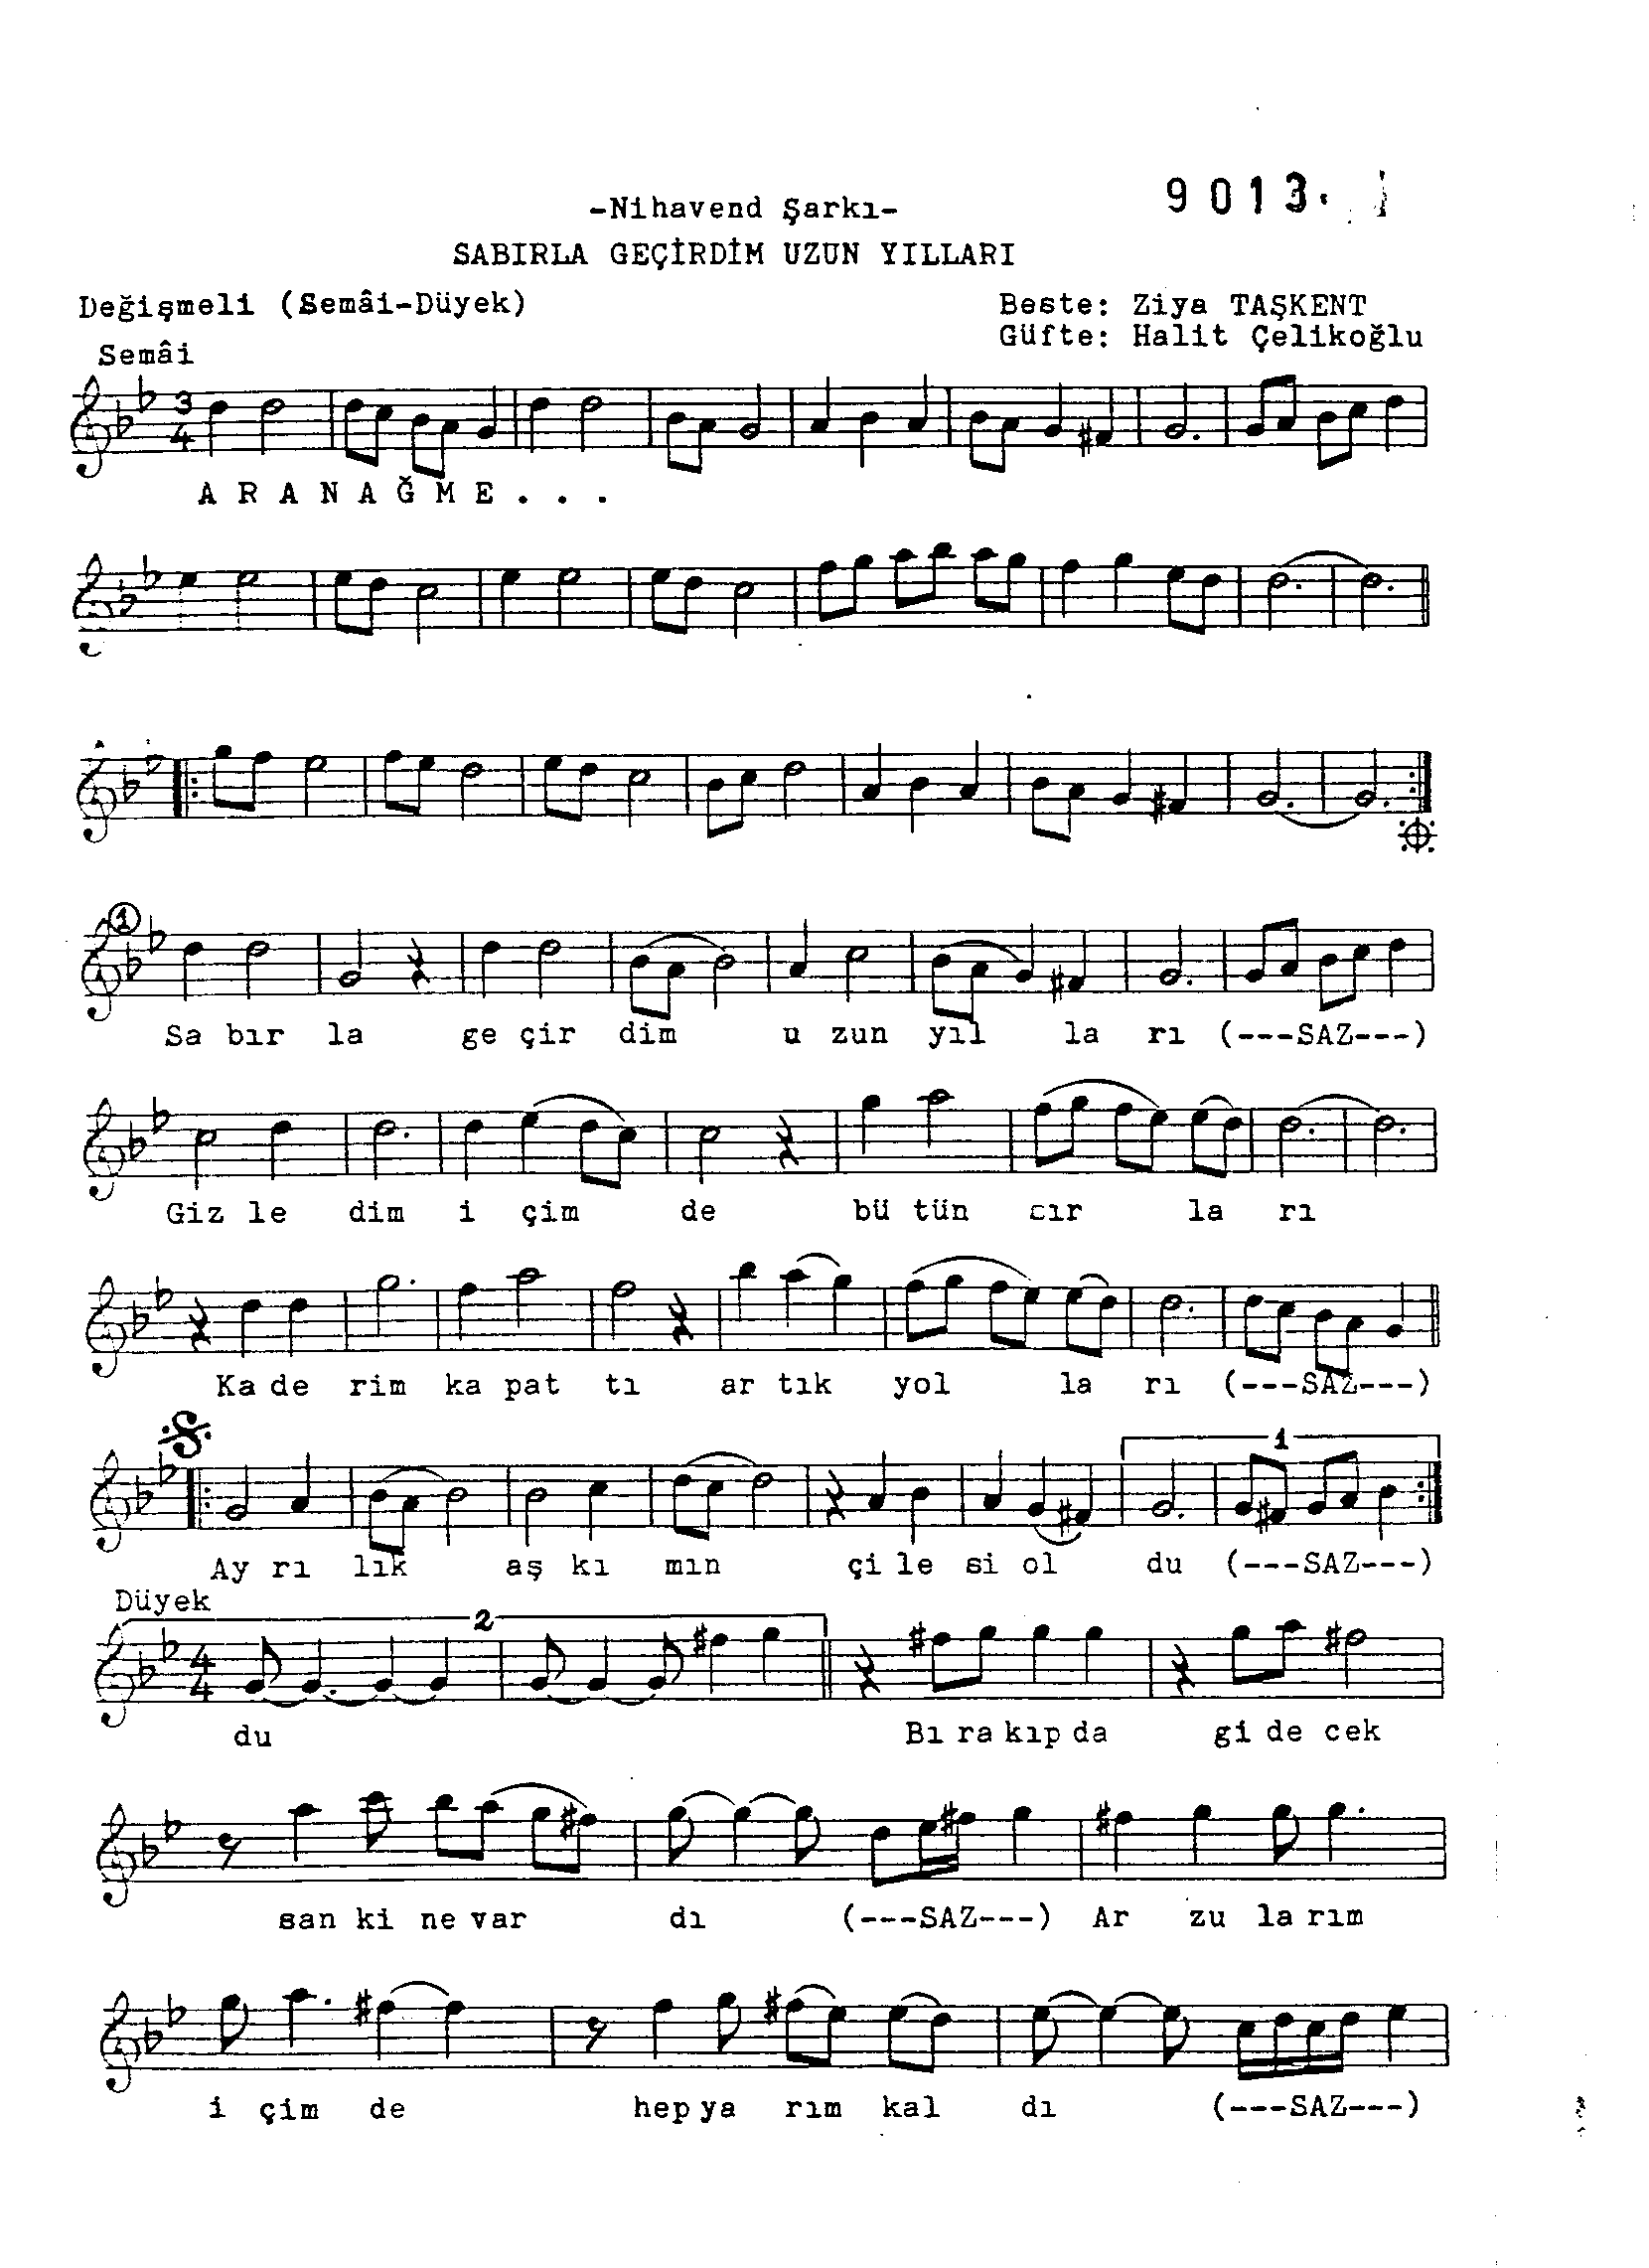 Nihâvend - Şarkı - Ziyâ Taşkent - Sayfa 1